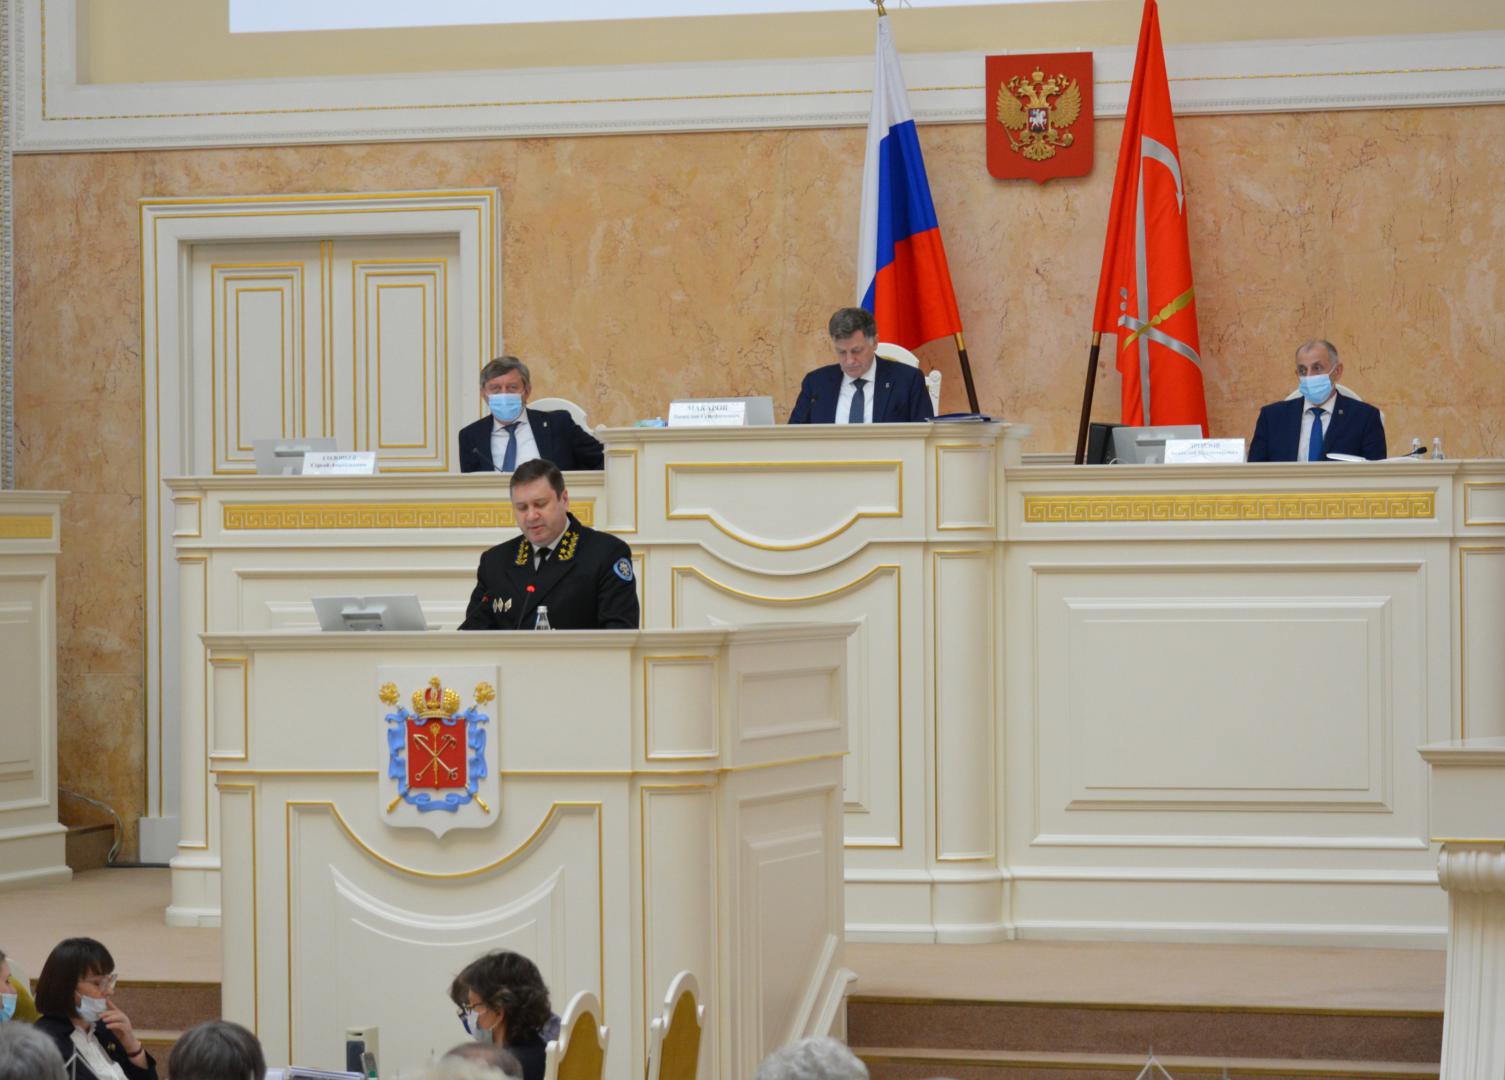 Контрольно-счетная палата Санкт-Петербурга представила заключение на проект городского бюджета-2021